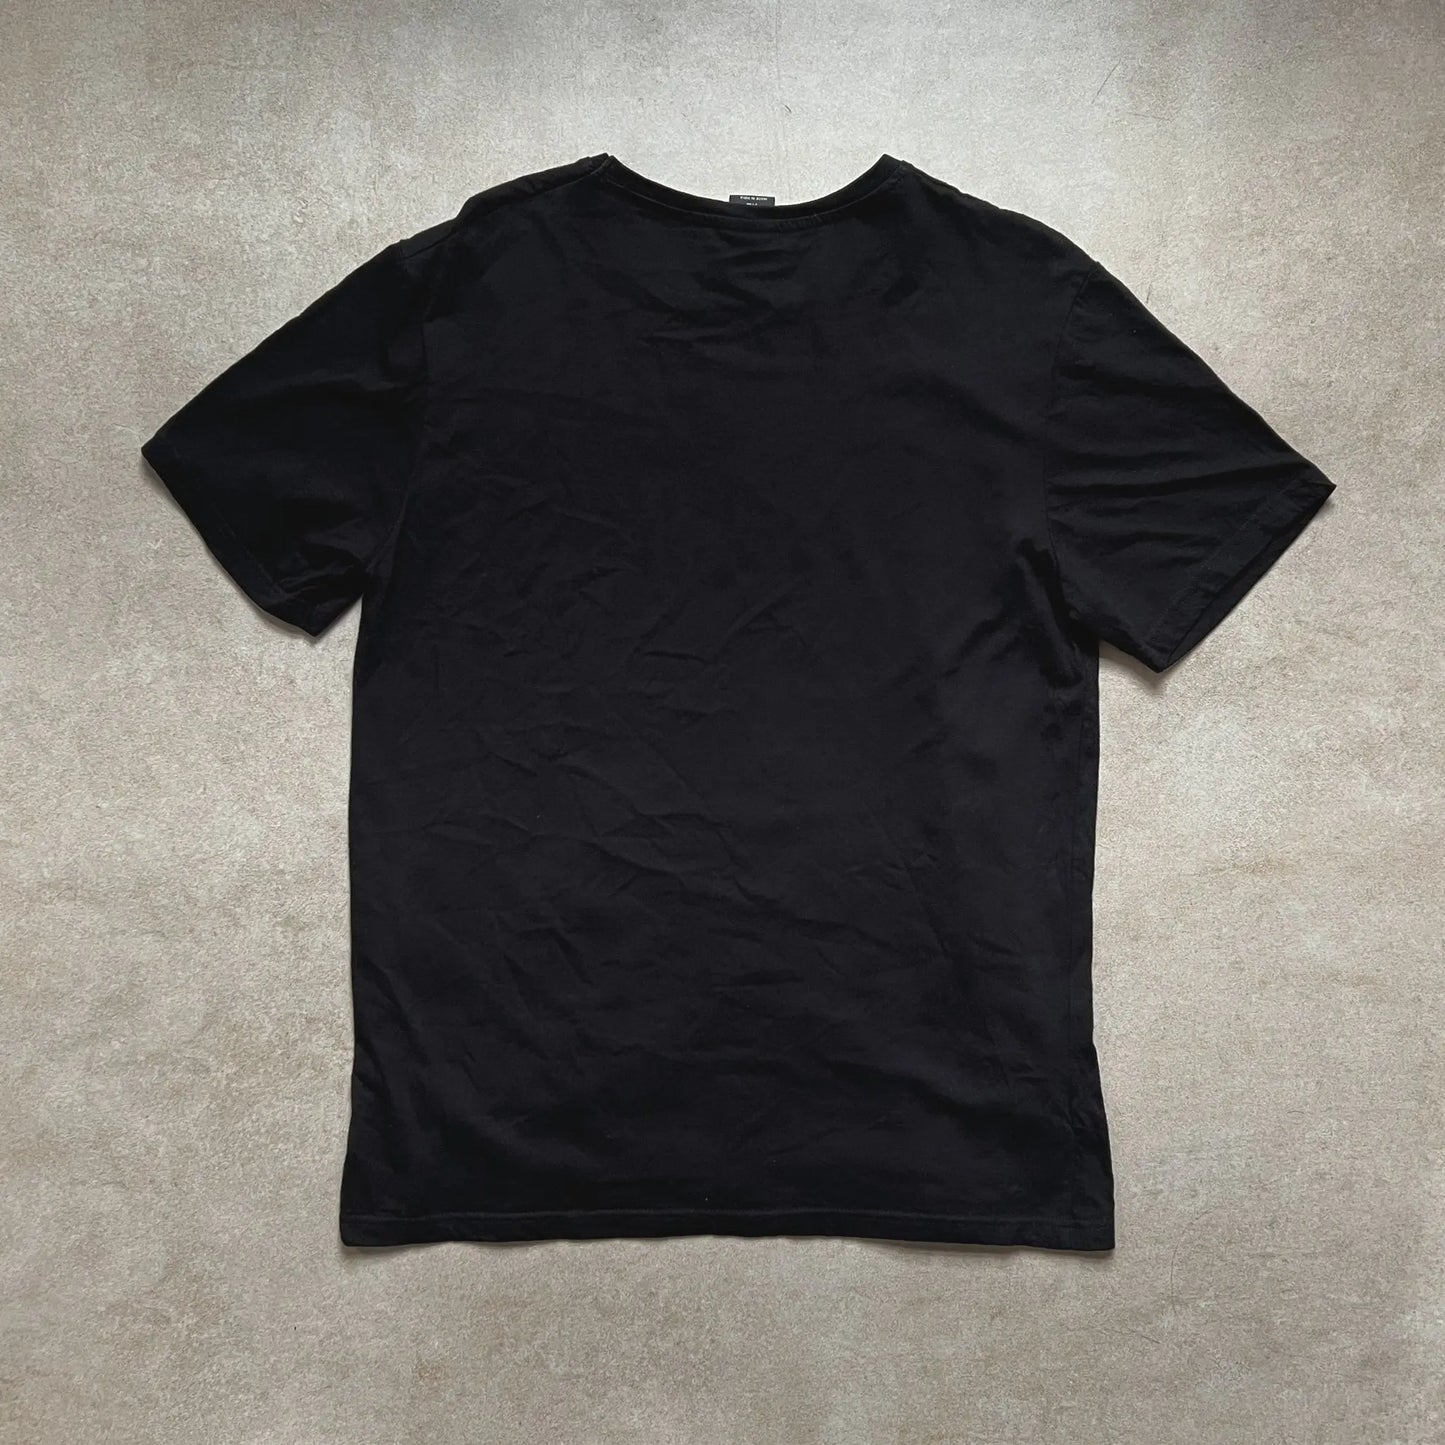 ET Movie Black T Shirt - XL sullivansvintage